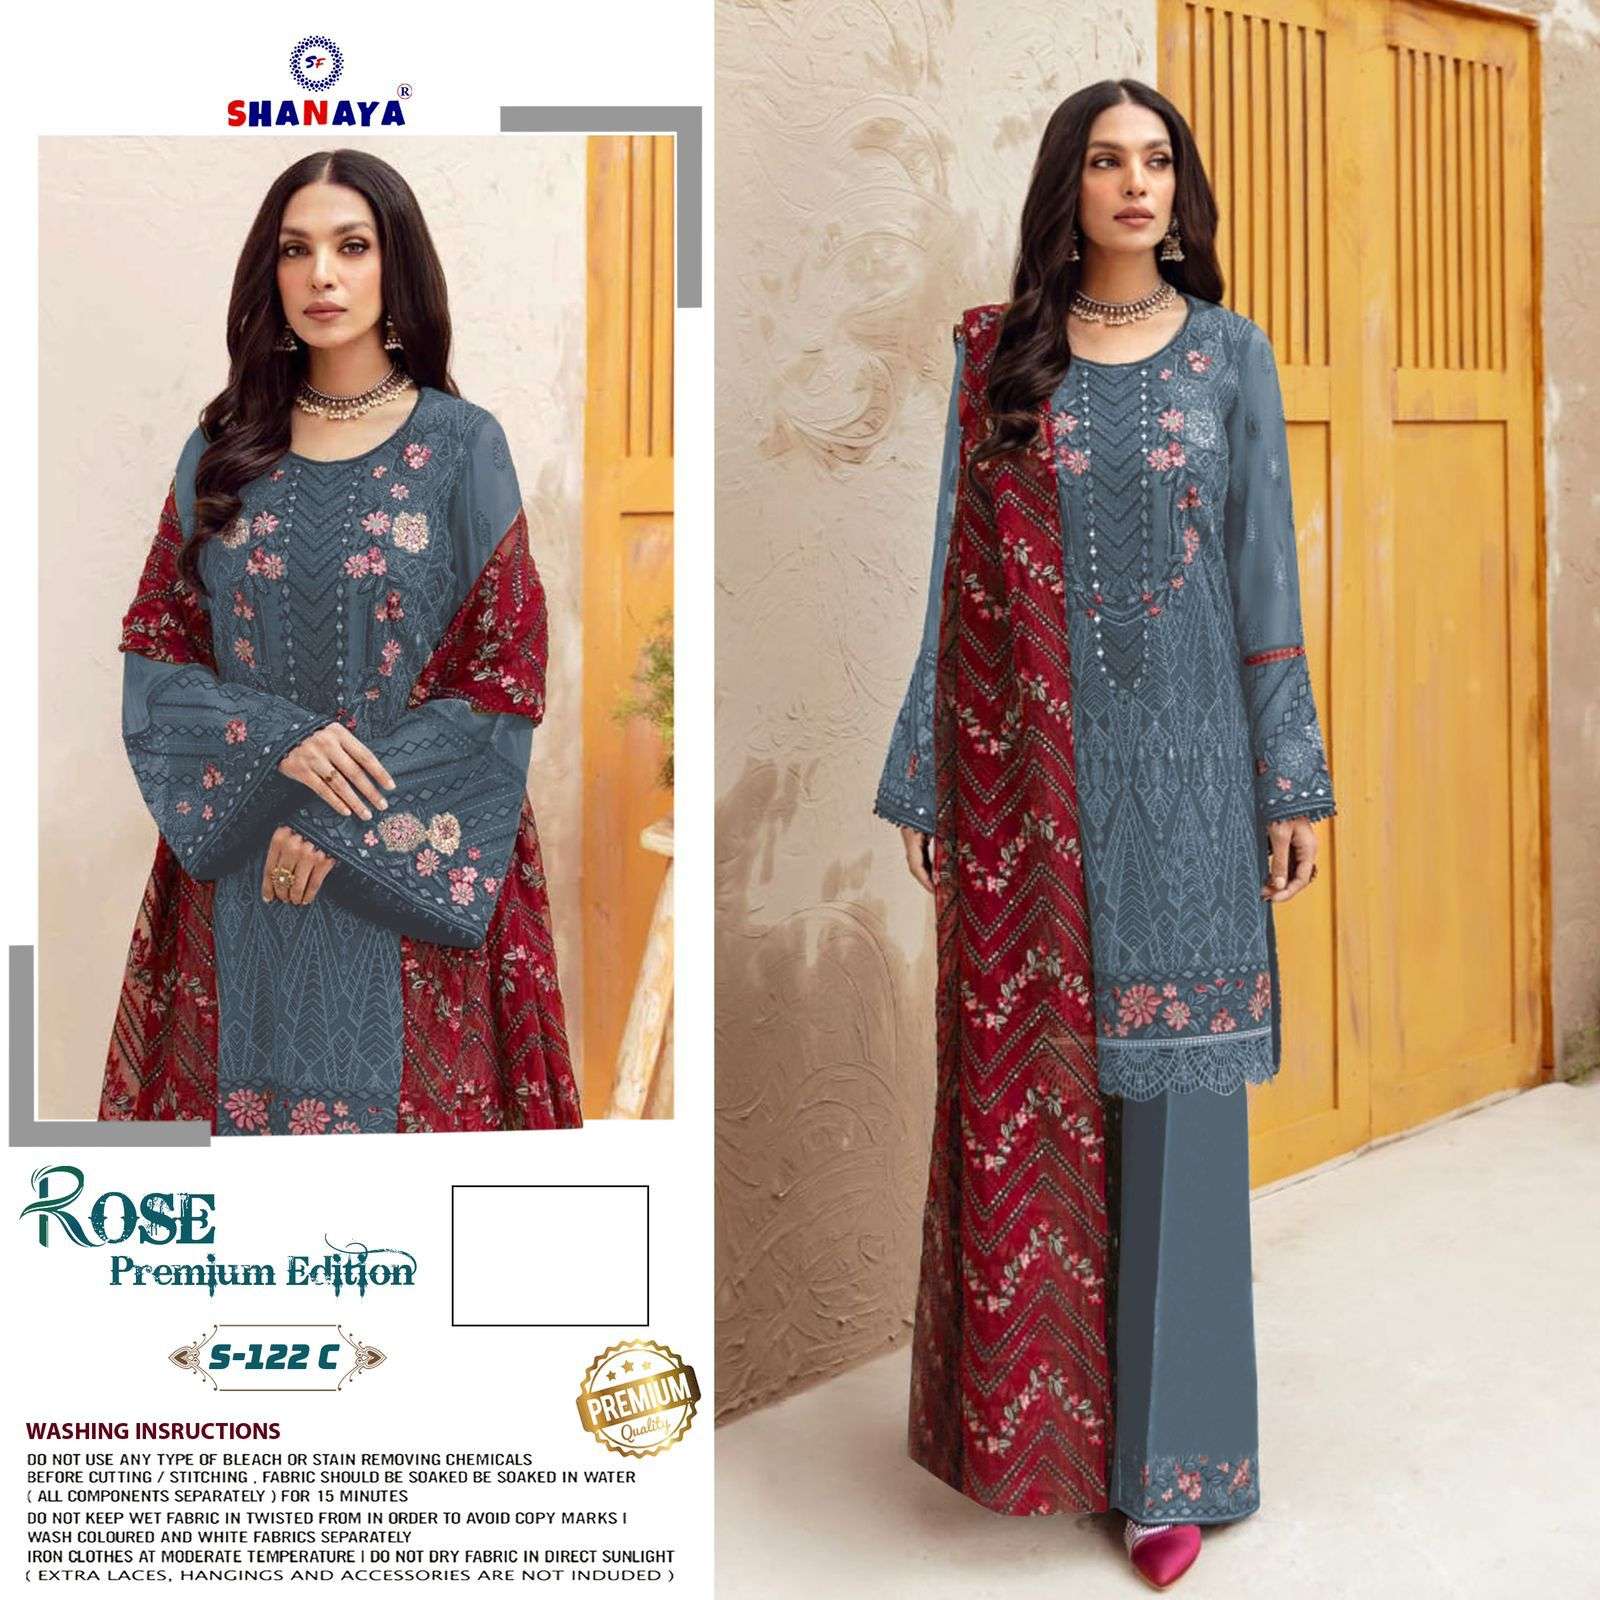 shanaya fashion s-122 series exclusive designer pakistani salwar kameez manufacturer surat 